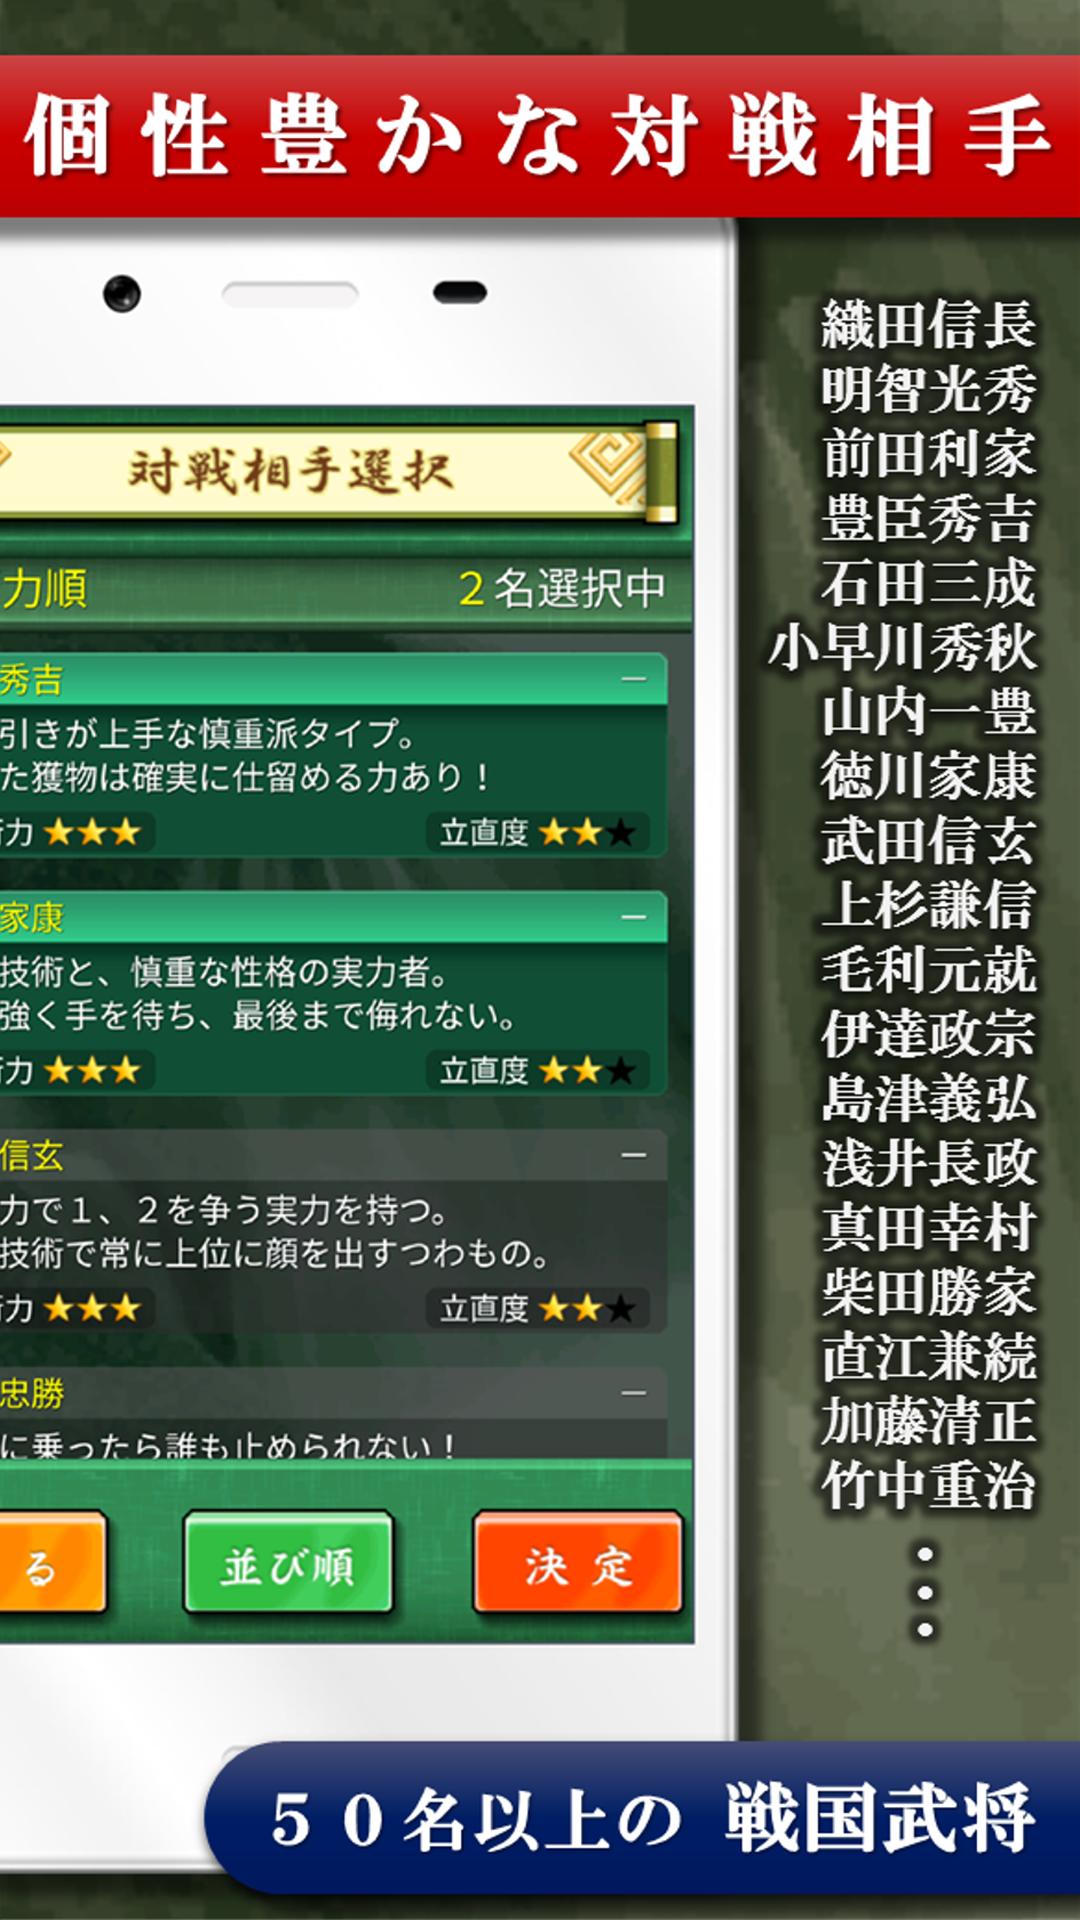 四人麻雀【公式】 4.18.0 Screenshot 4